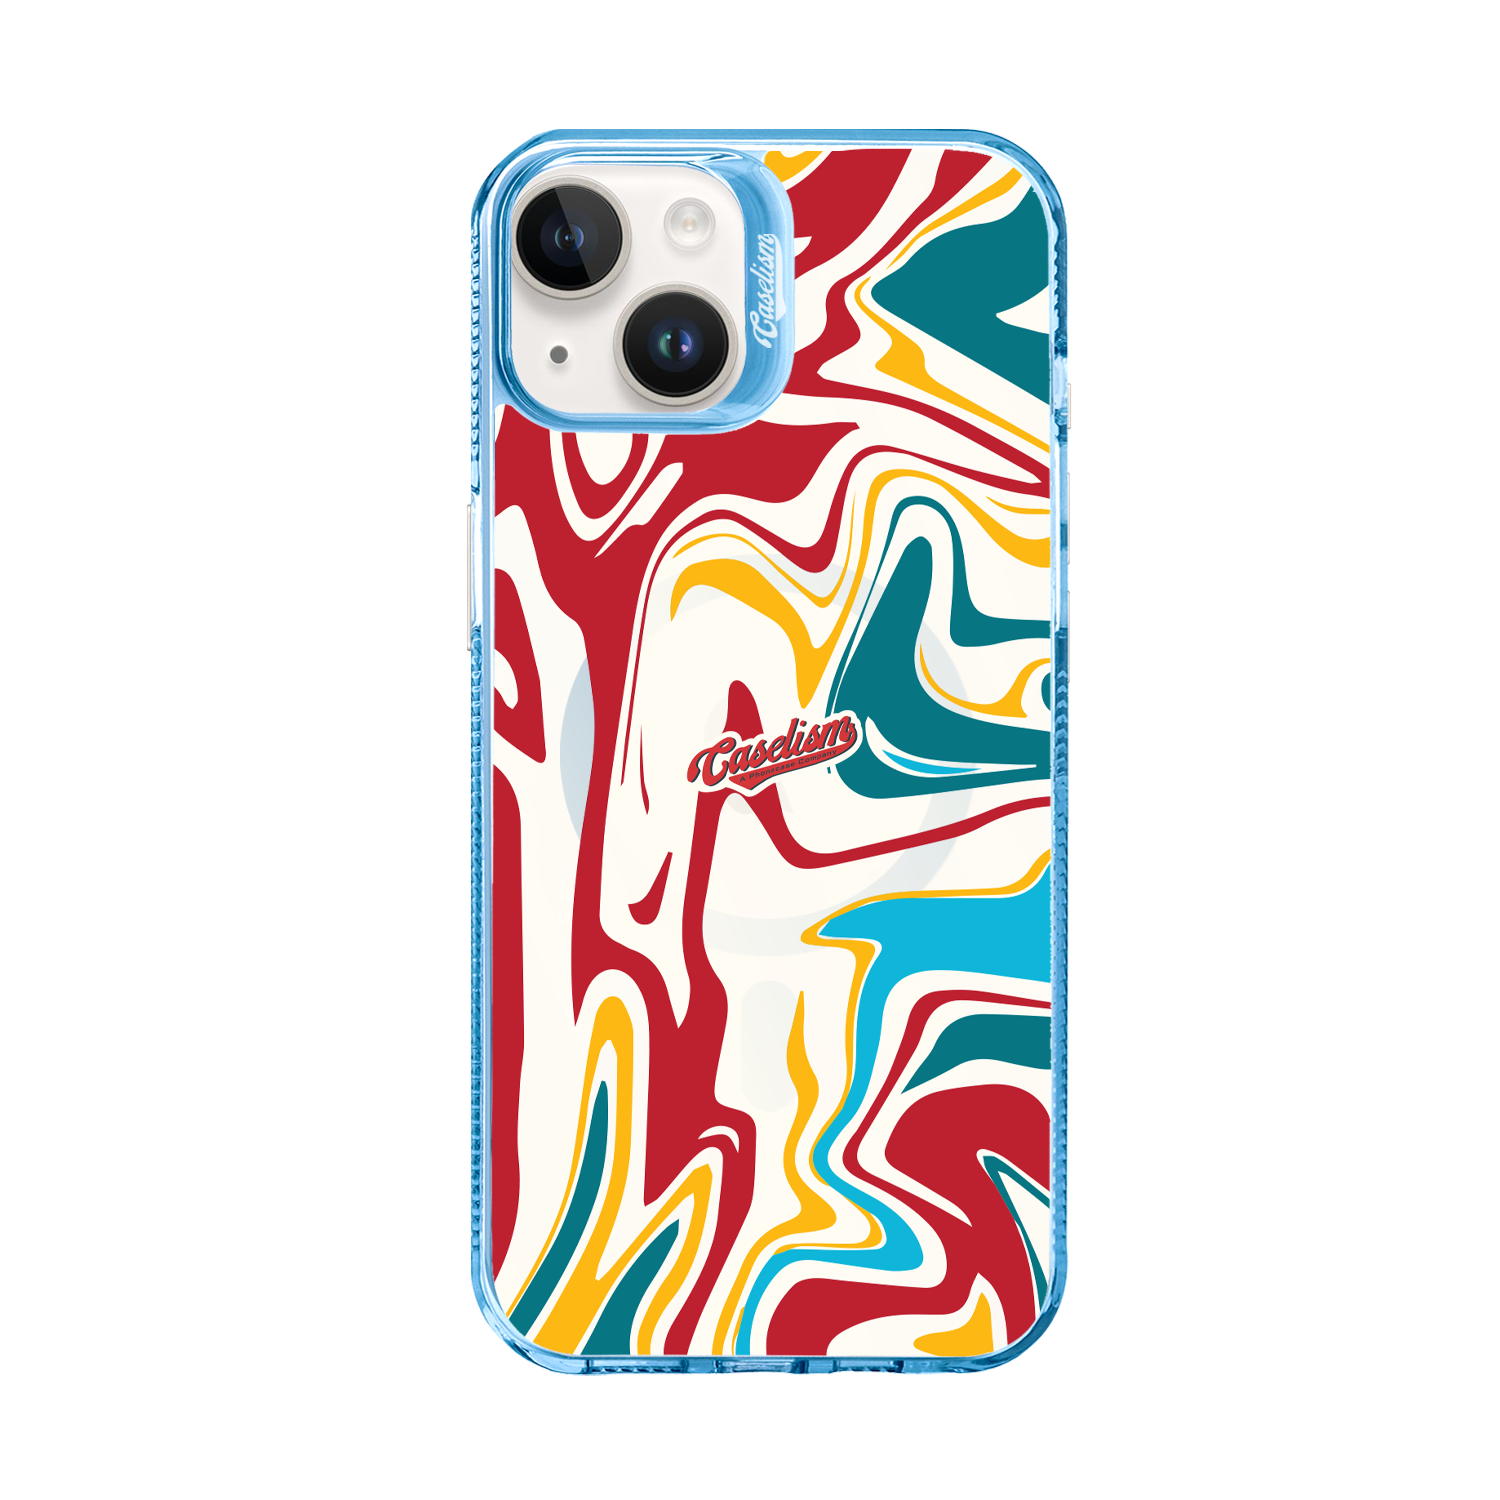 CASE007 - ColorLite Case for iPhone